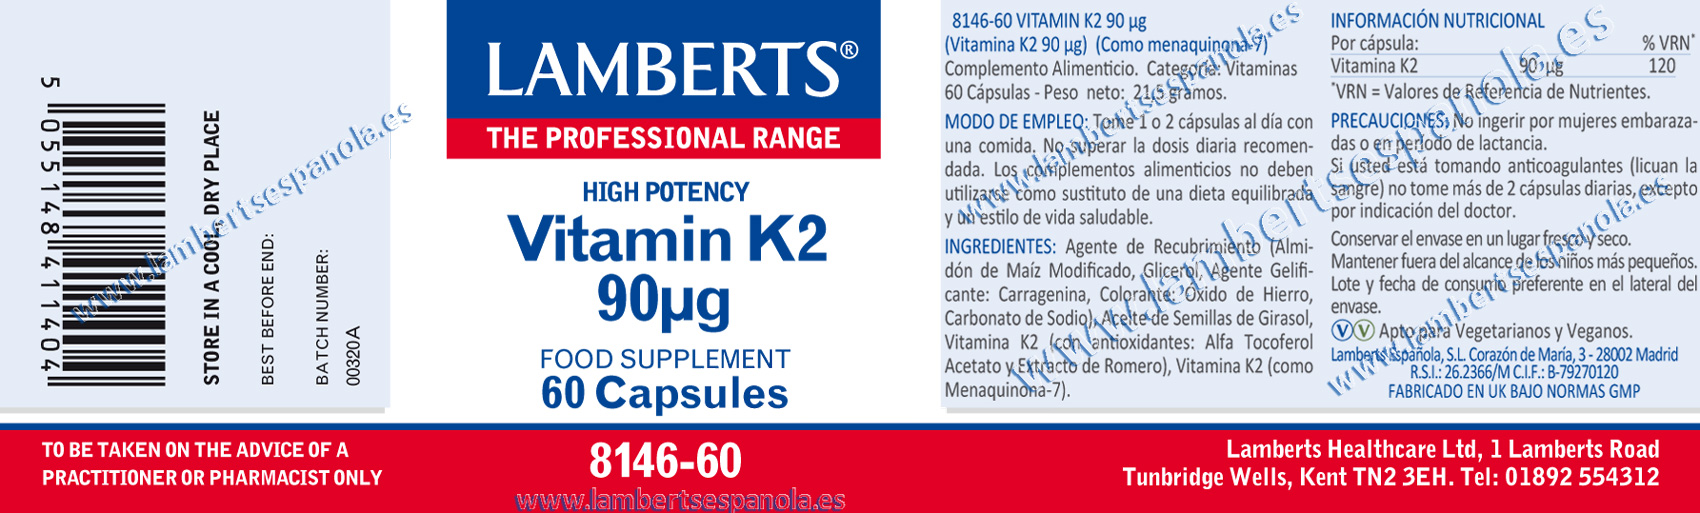 Vitamina K2 de Lamberts